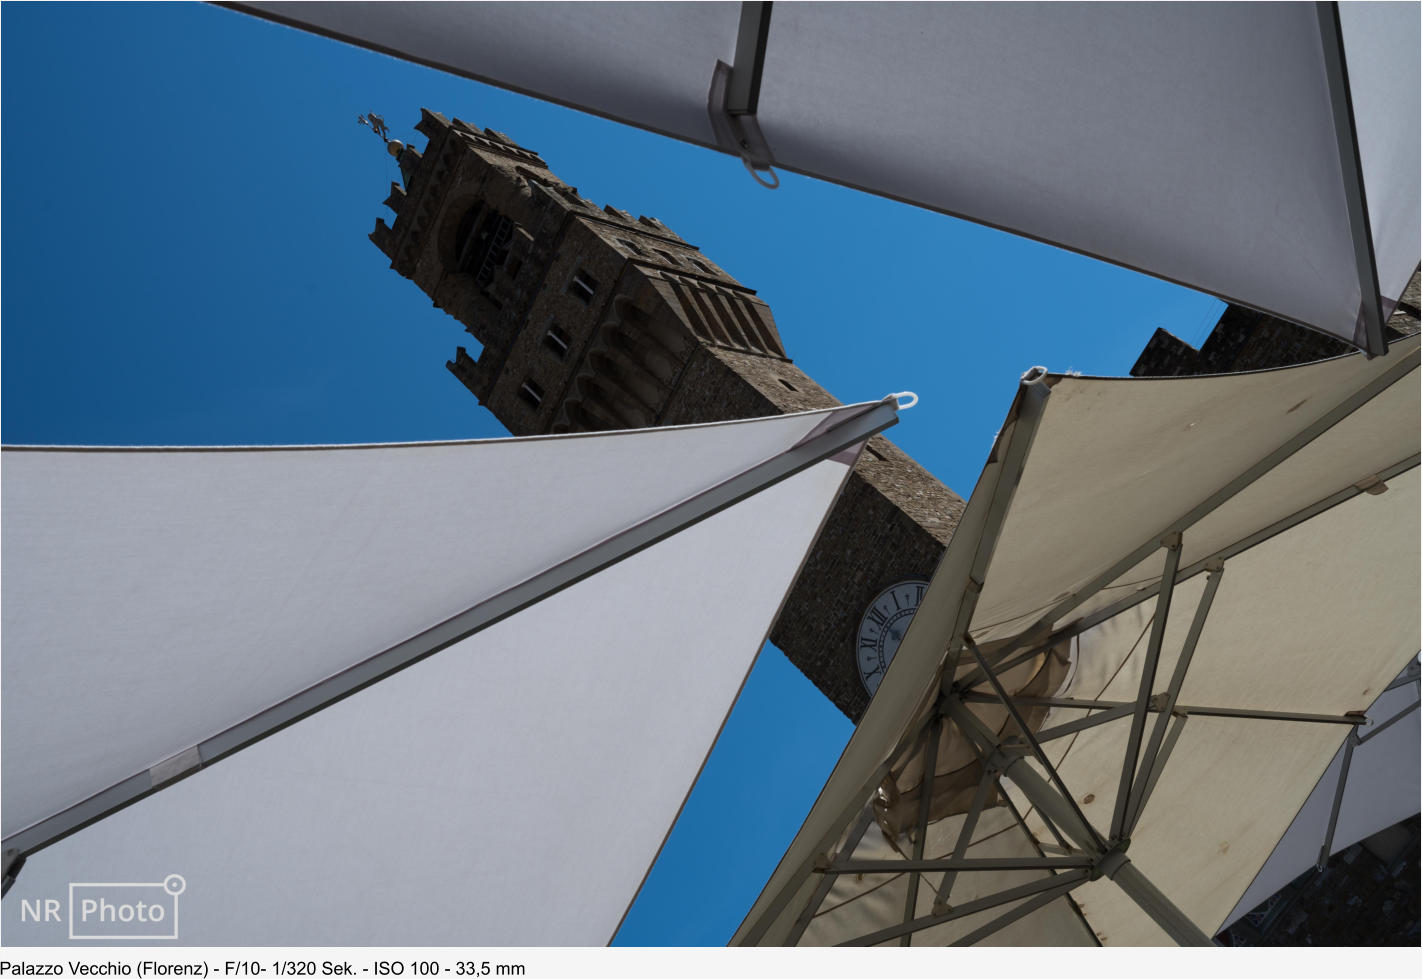 Palazzo Vecchio (Florenz) - F/10- 1/320 Sek. - ISO 100 - 33,5 mm